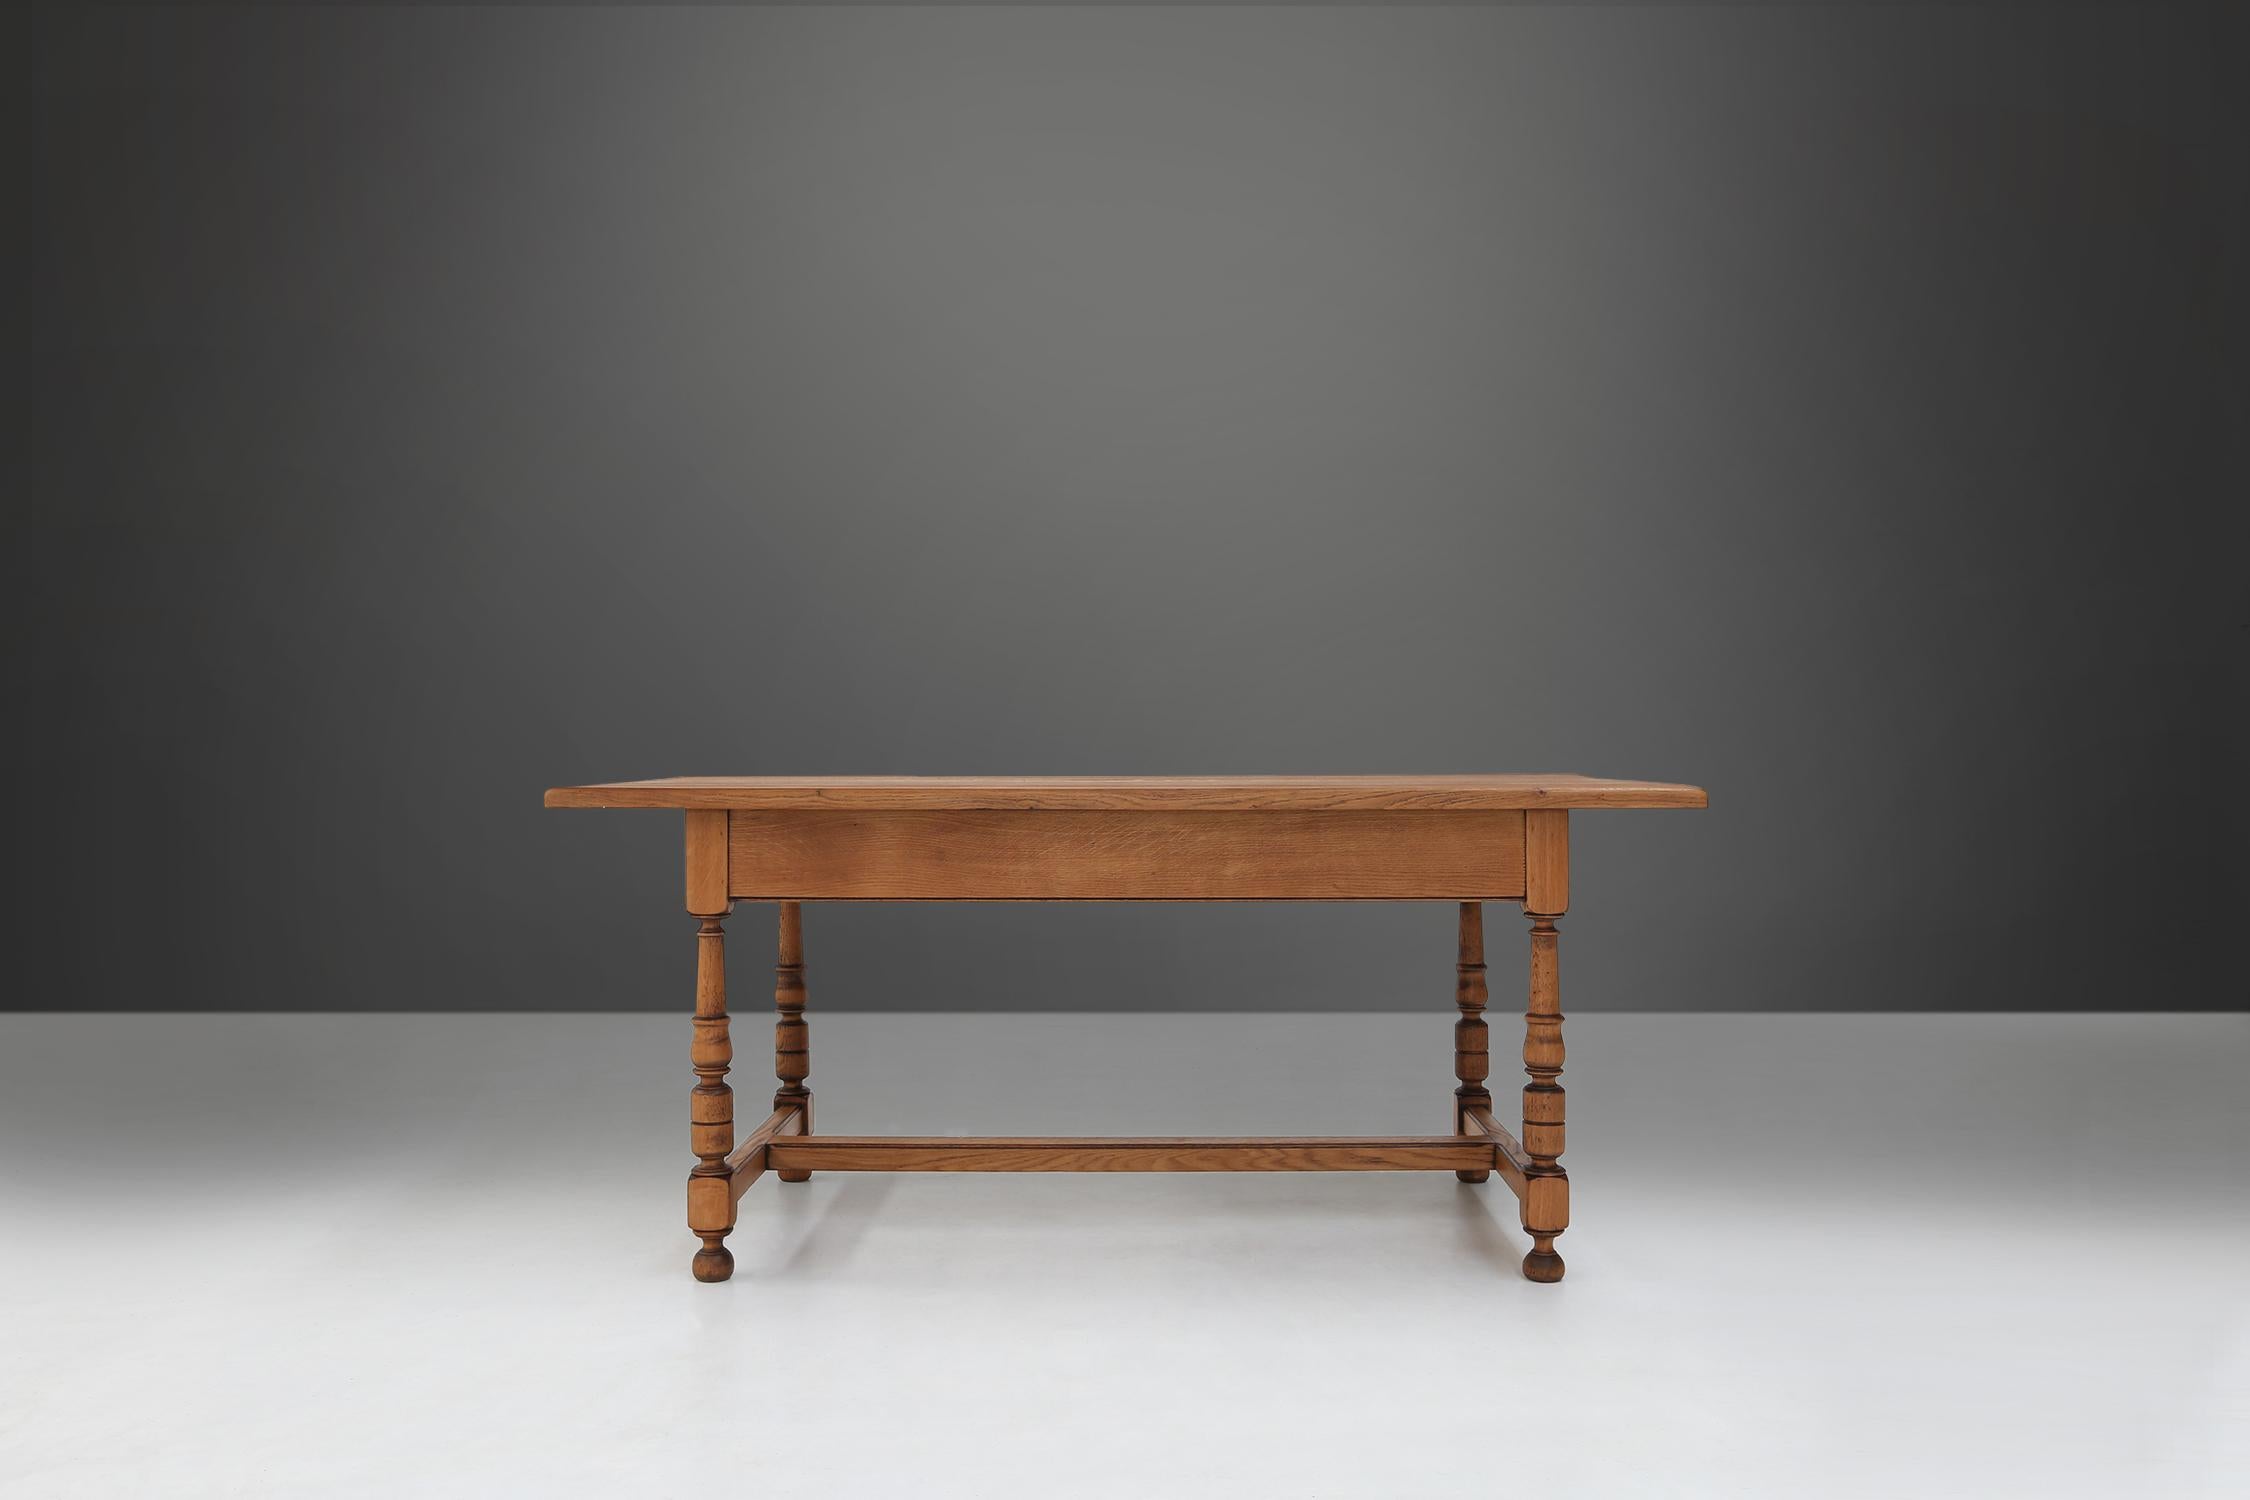 Cette table du XXe siècle est fabriquée en bois de chêne de haute qualité et a une finition brun clair. Les pieds sont torsadés et ont une forme sphérique, ce qui confère à la table un aspect élégant et classique.

Le chêne a une brillance naturelle